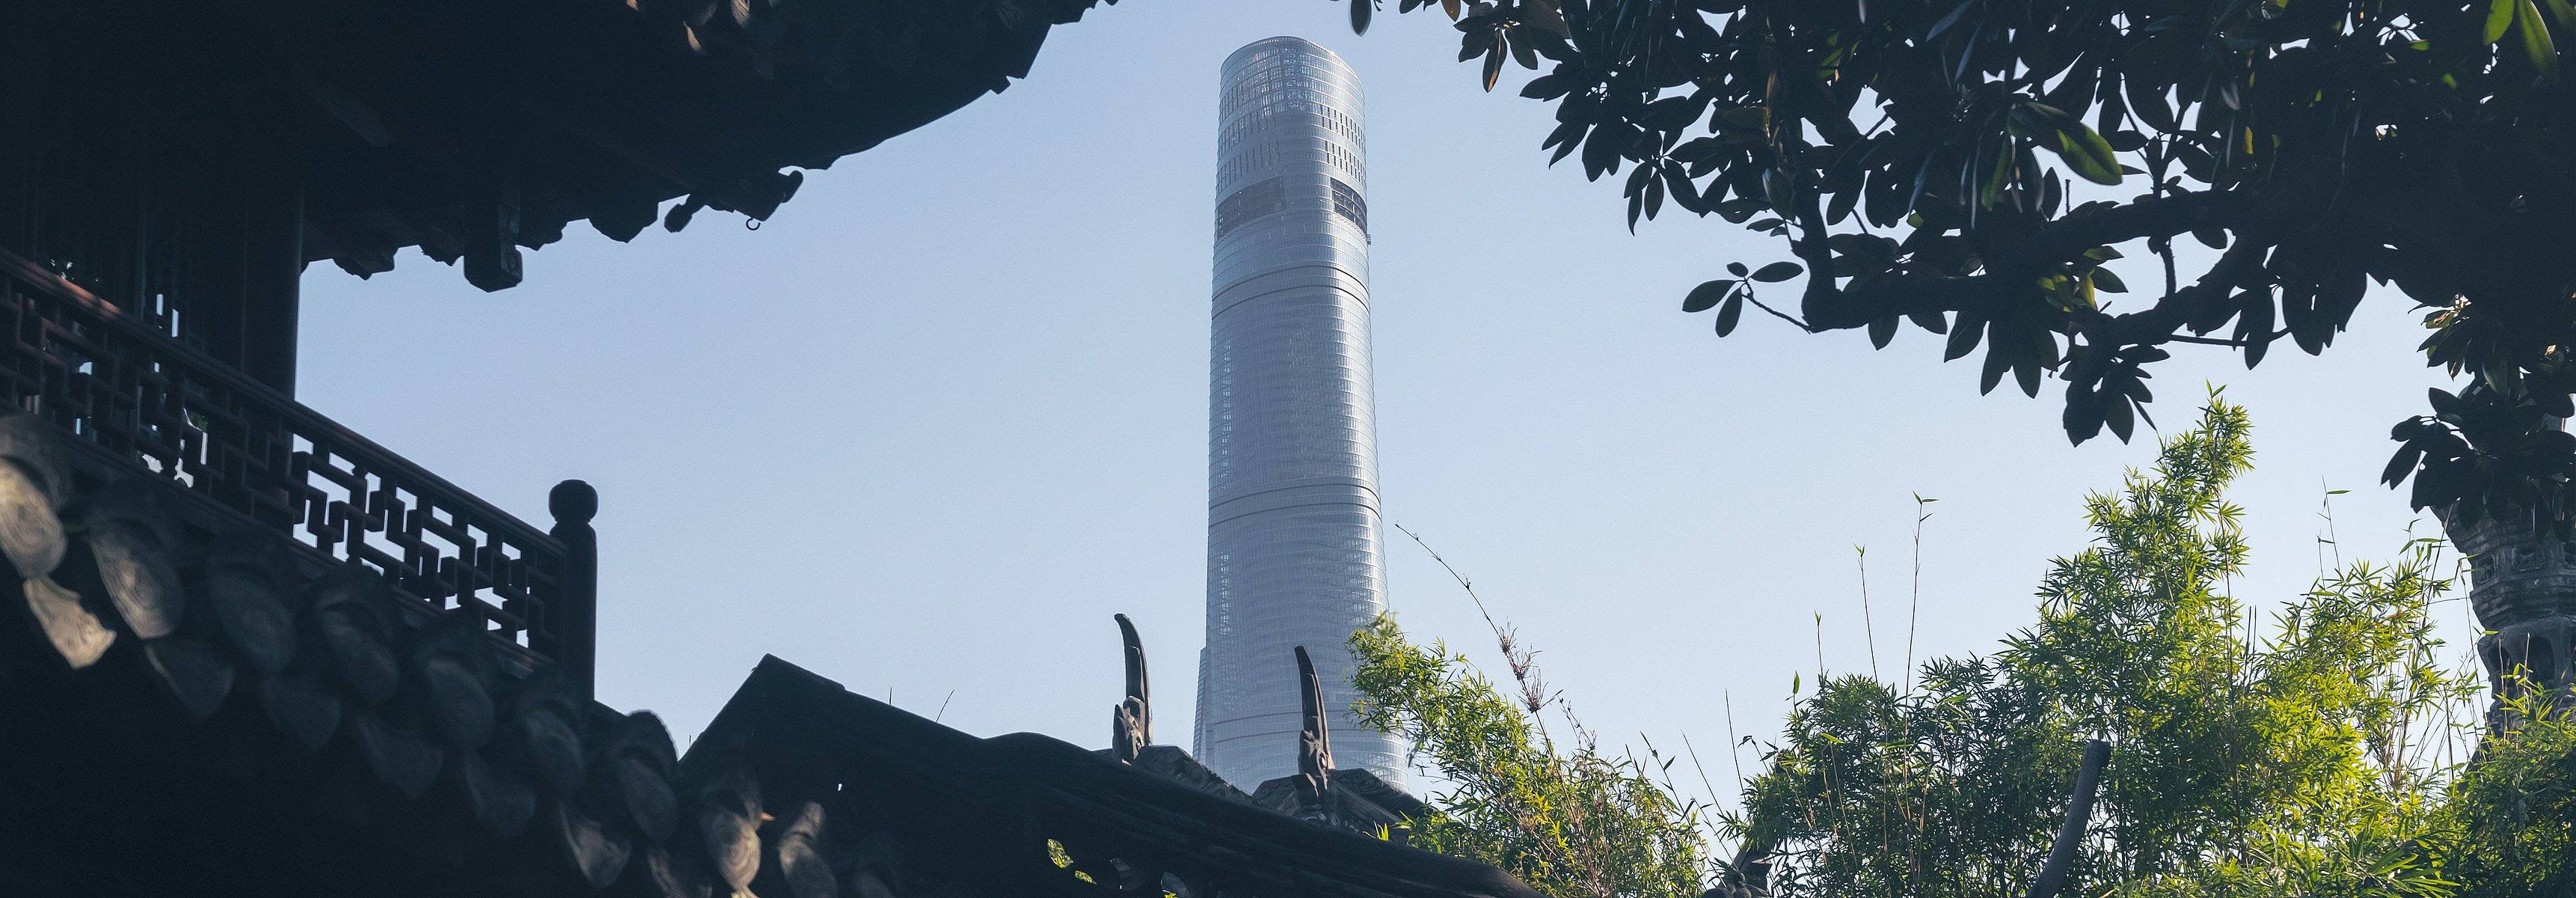 Detalle de las esculturas del techo con un bloque de torre moderno en Yuyuan